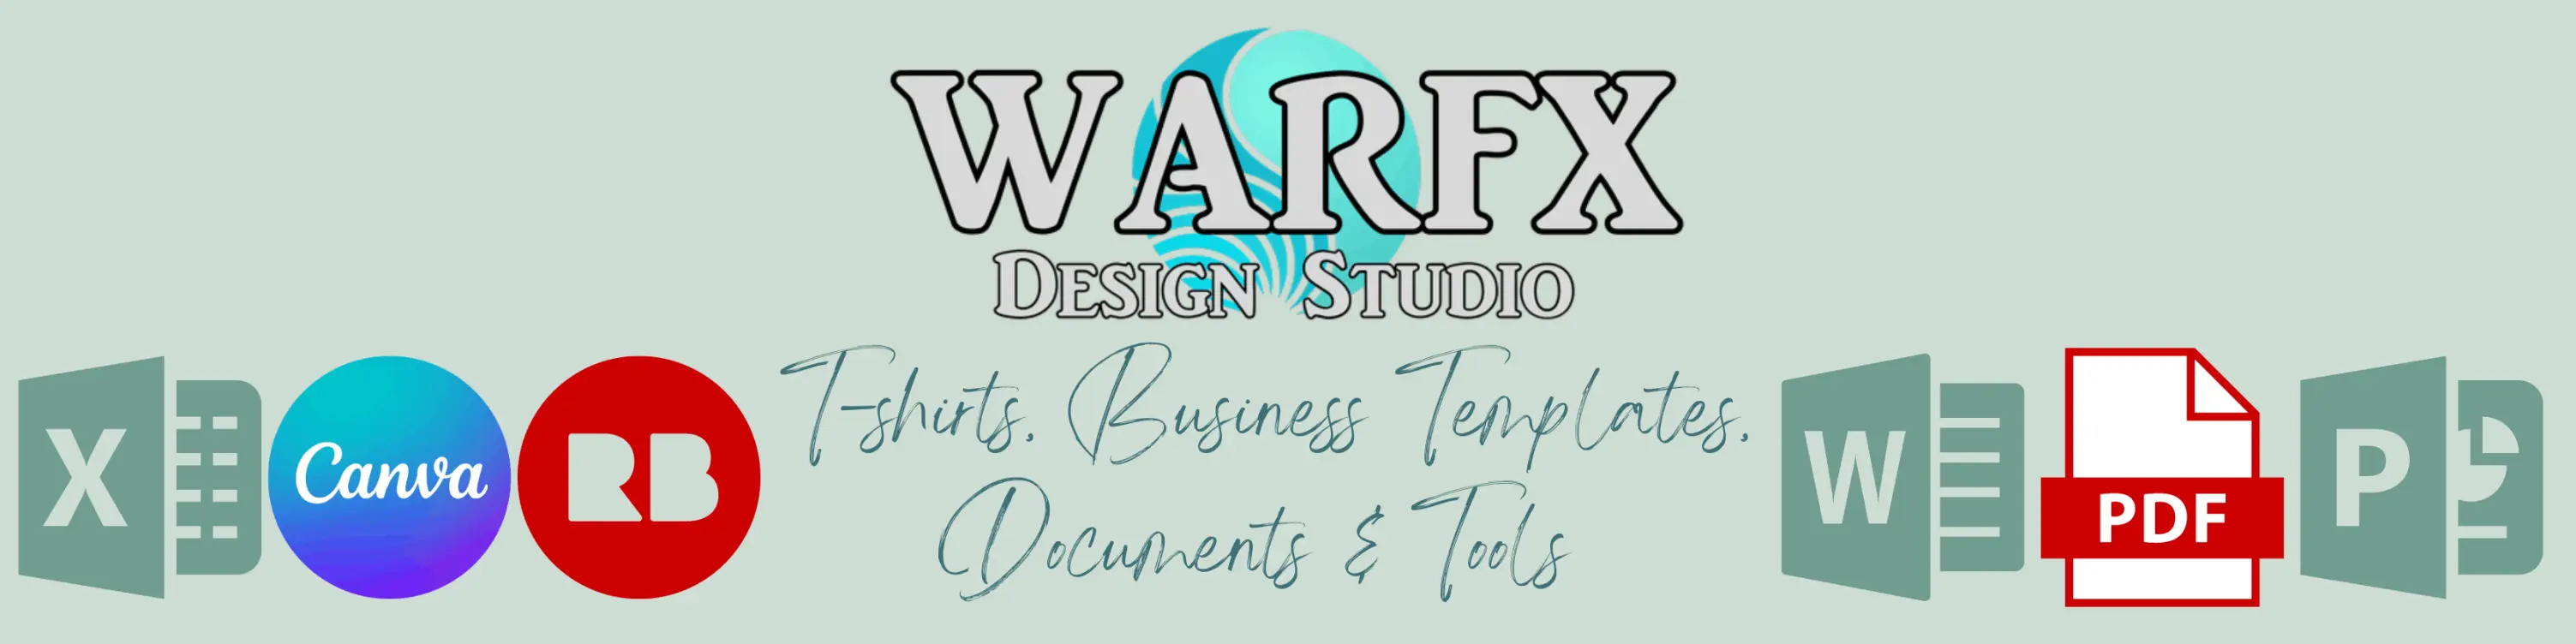 WarFX Design Studio